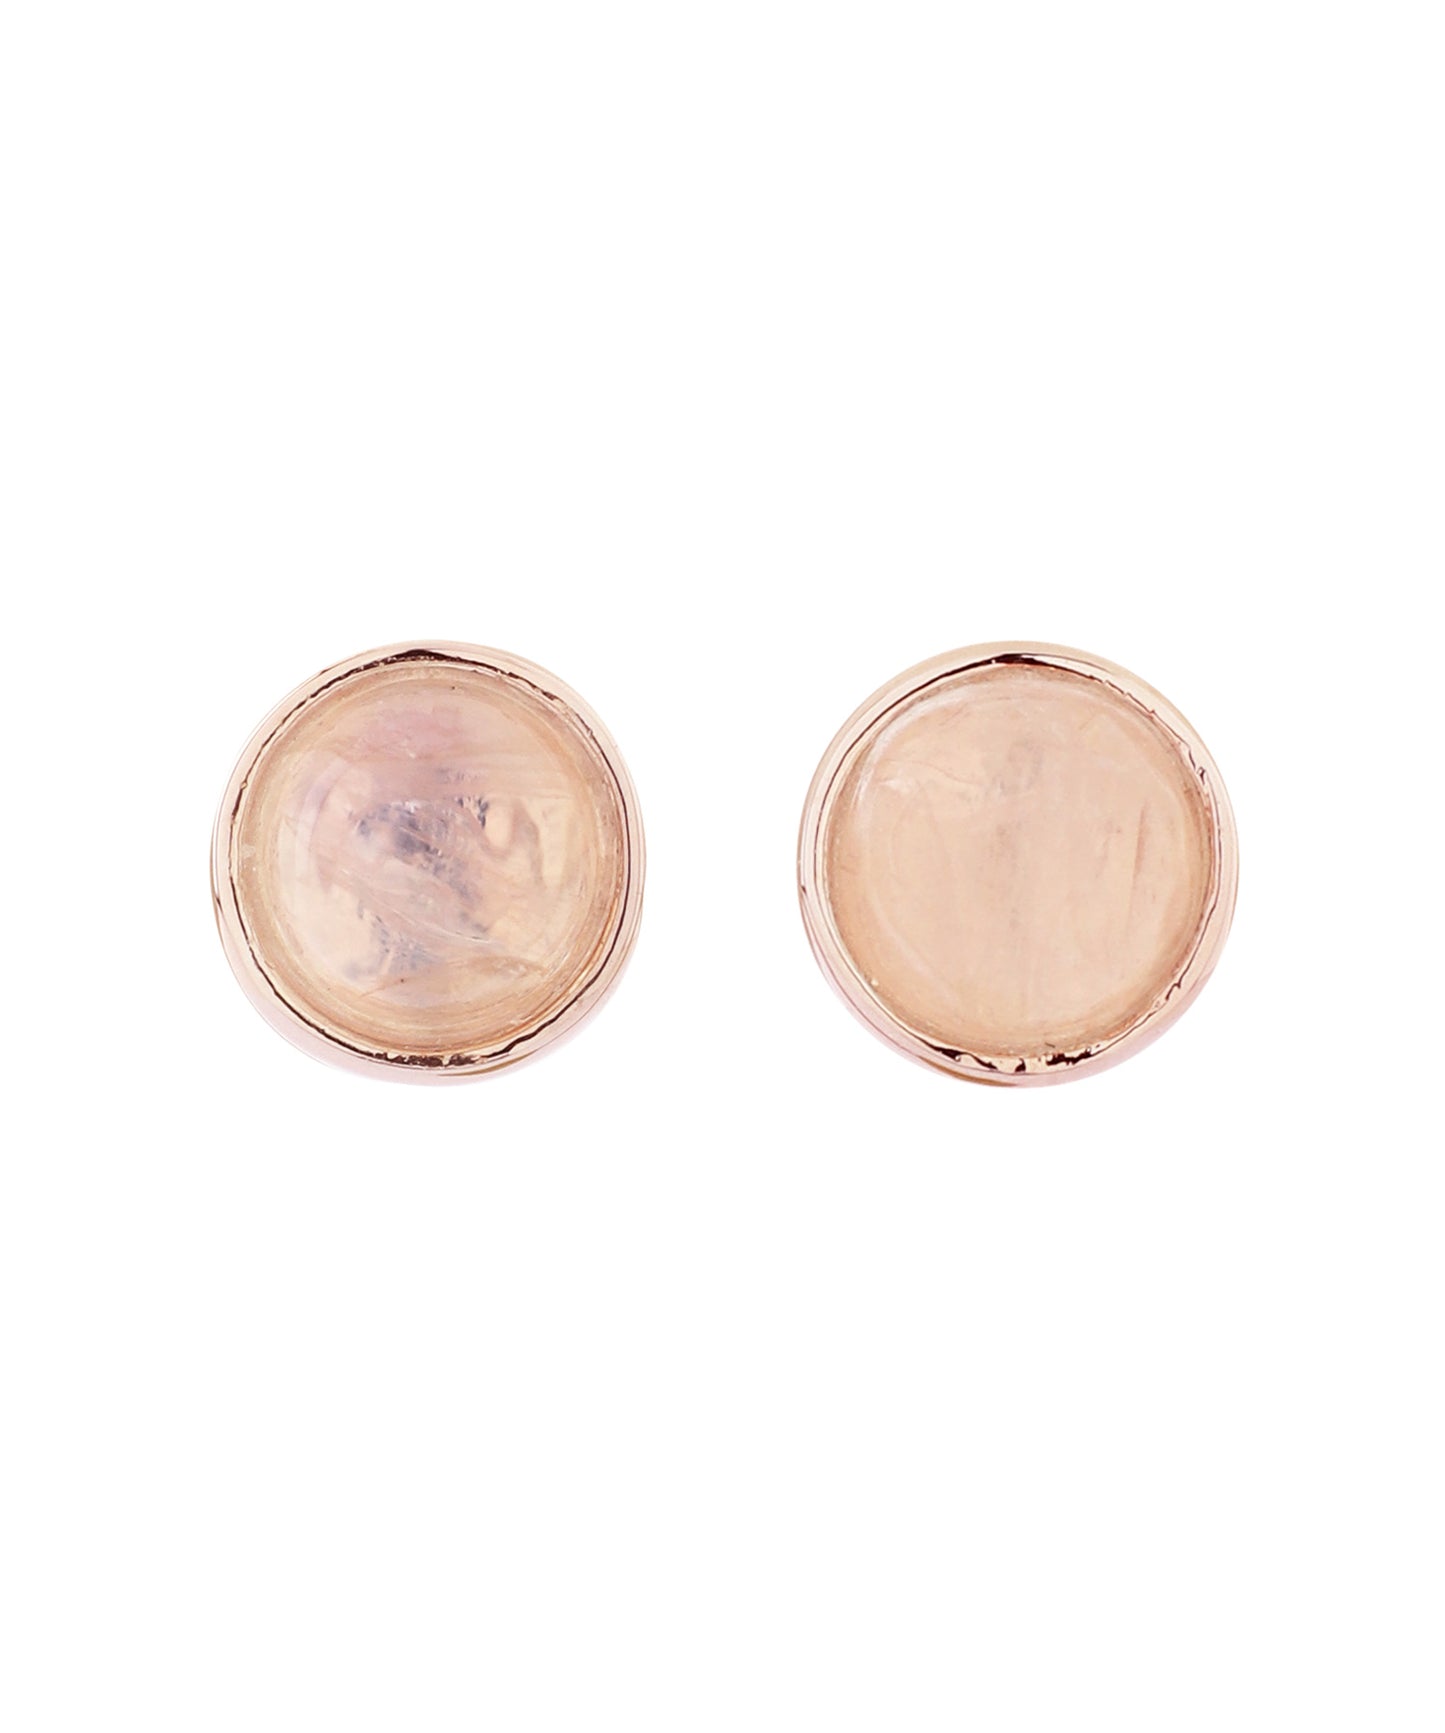 【Limited Quantity】Gemstone Earrings [Sheer Pink Nudie]